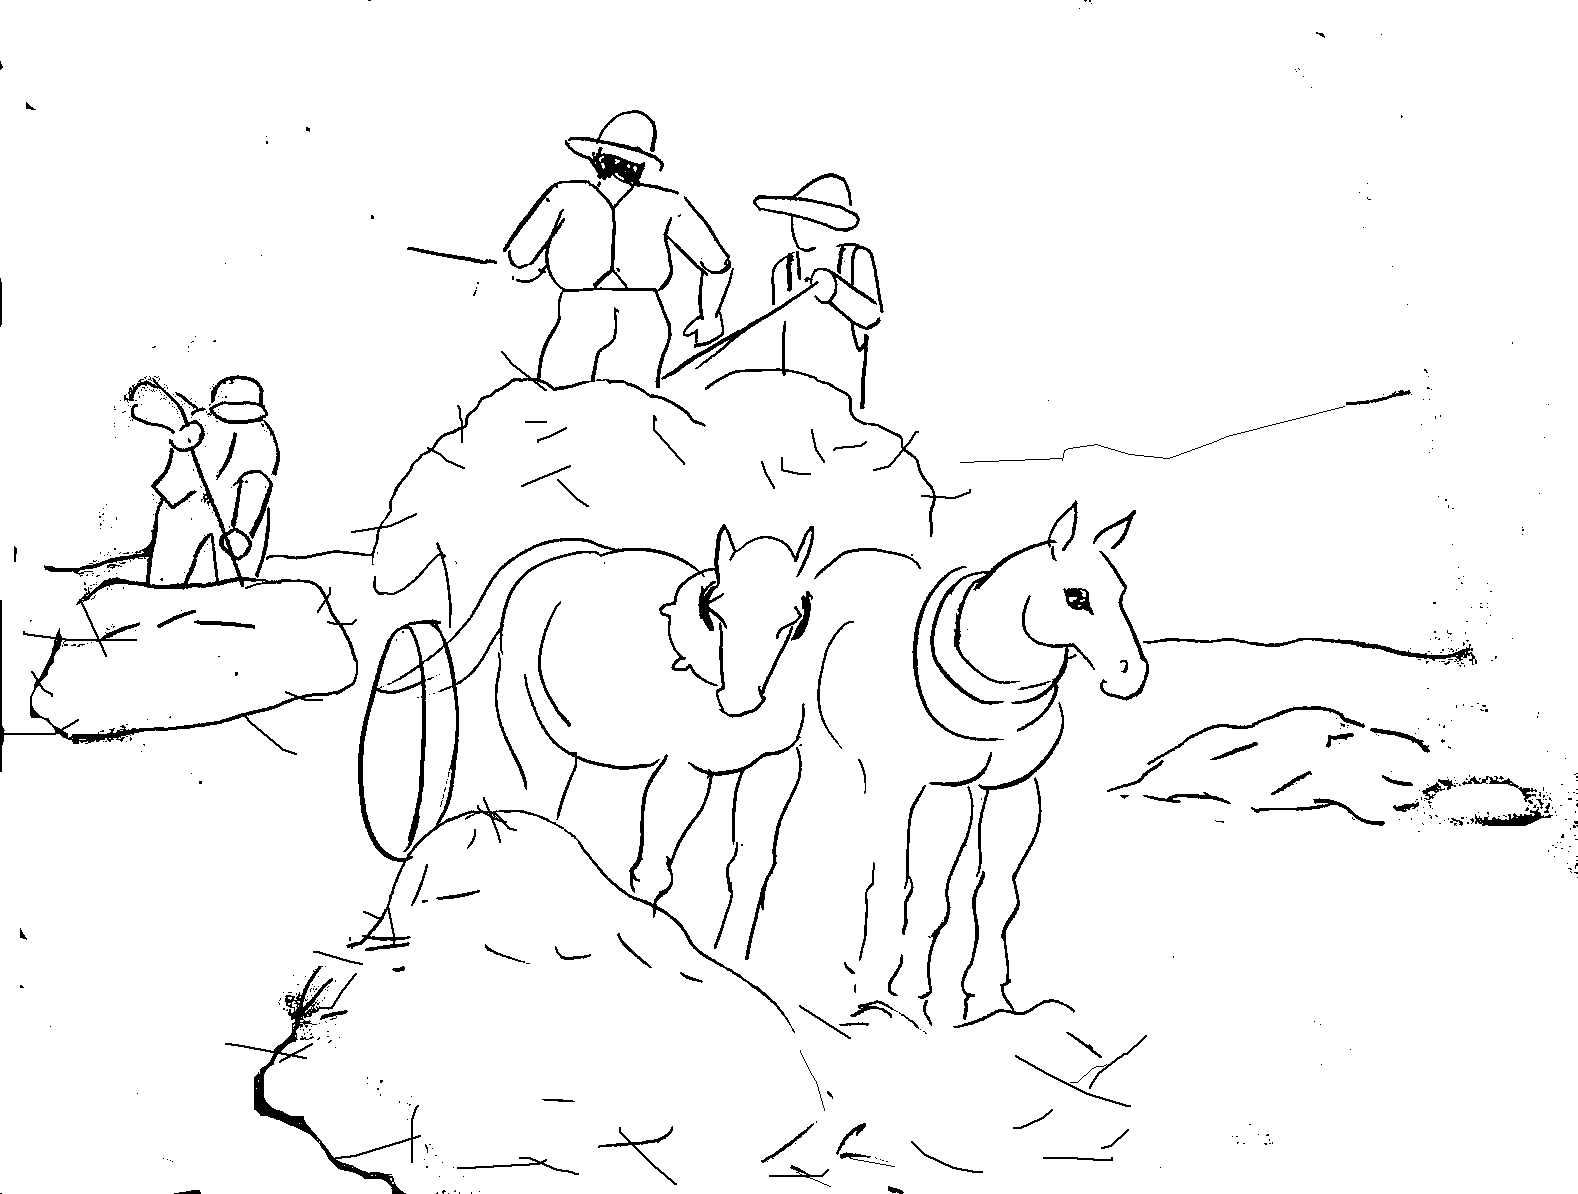 Bức tranh tô màu về cuộc sống của bác nông dân